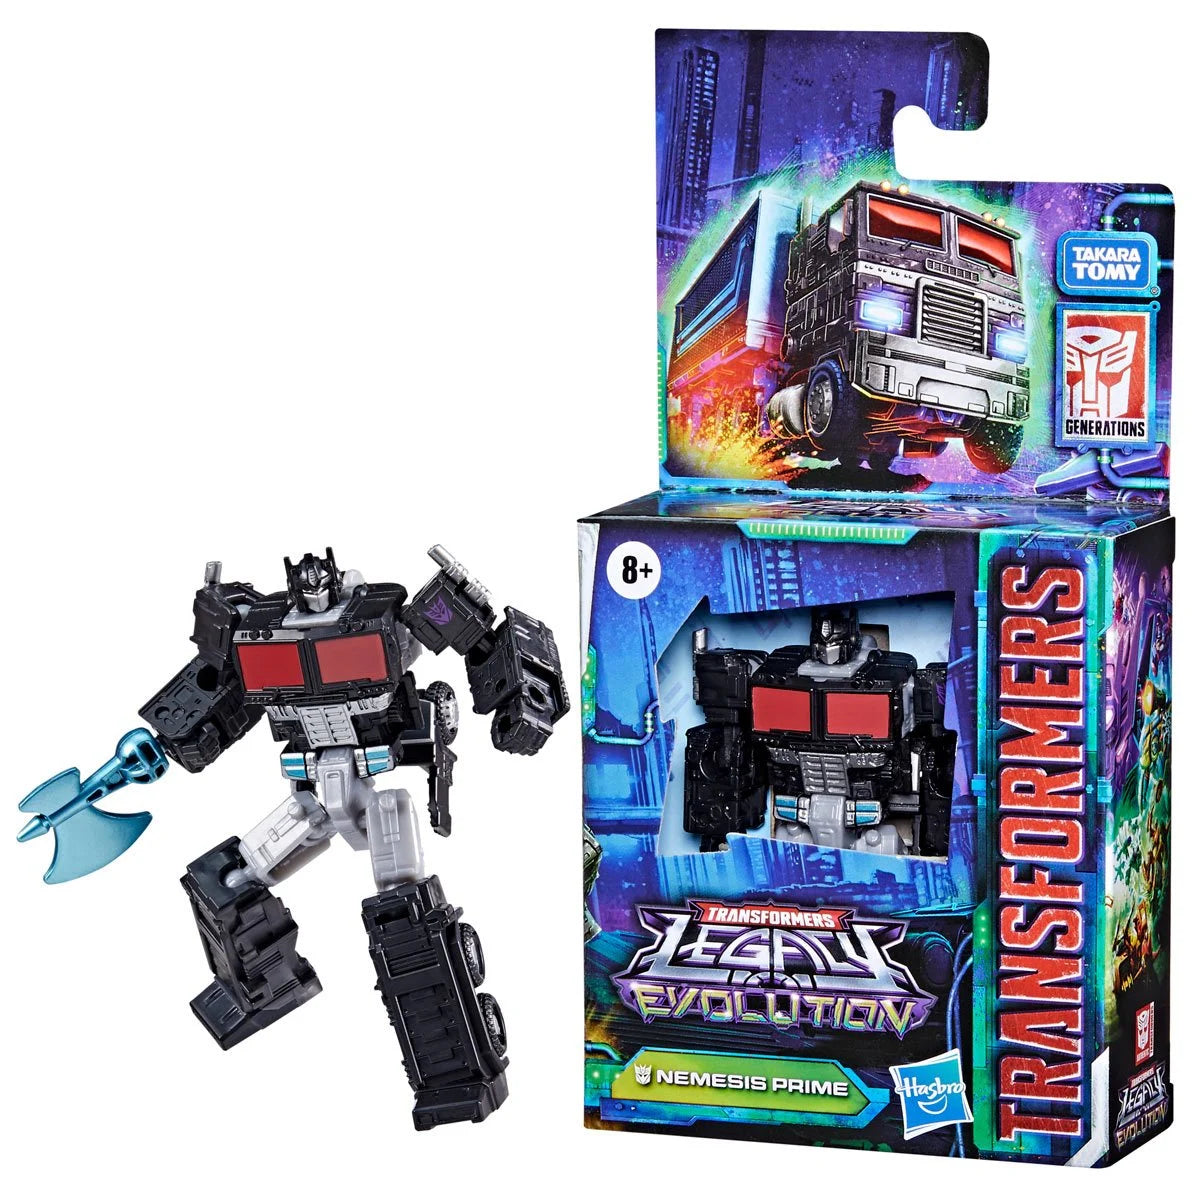 Transformers Generations Legacy Evolution Core Nemesis Prime Action Figure Toys